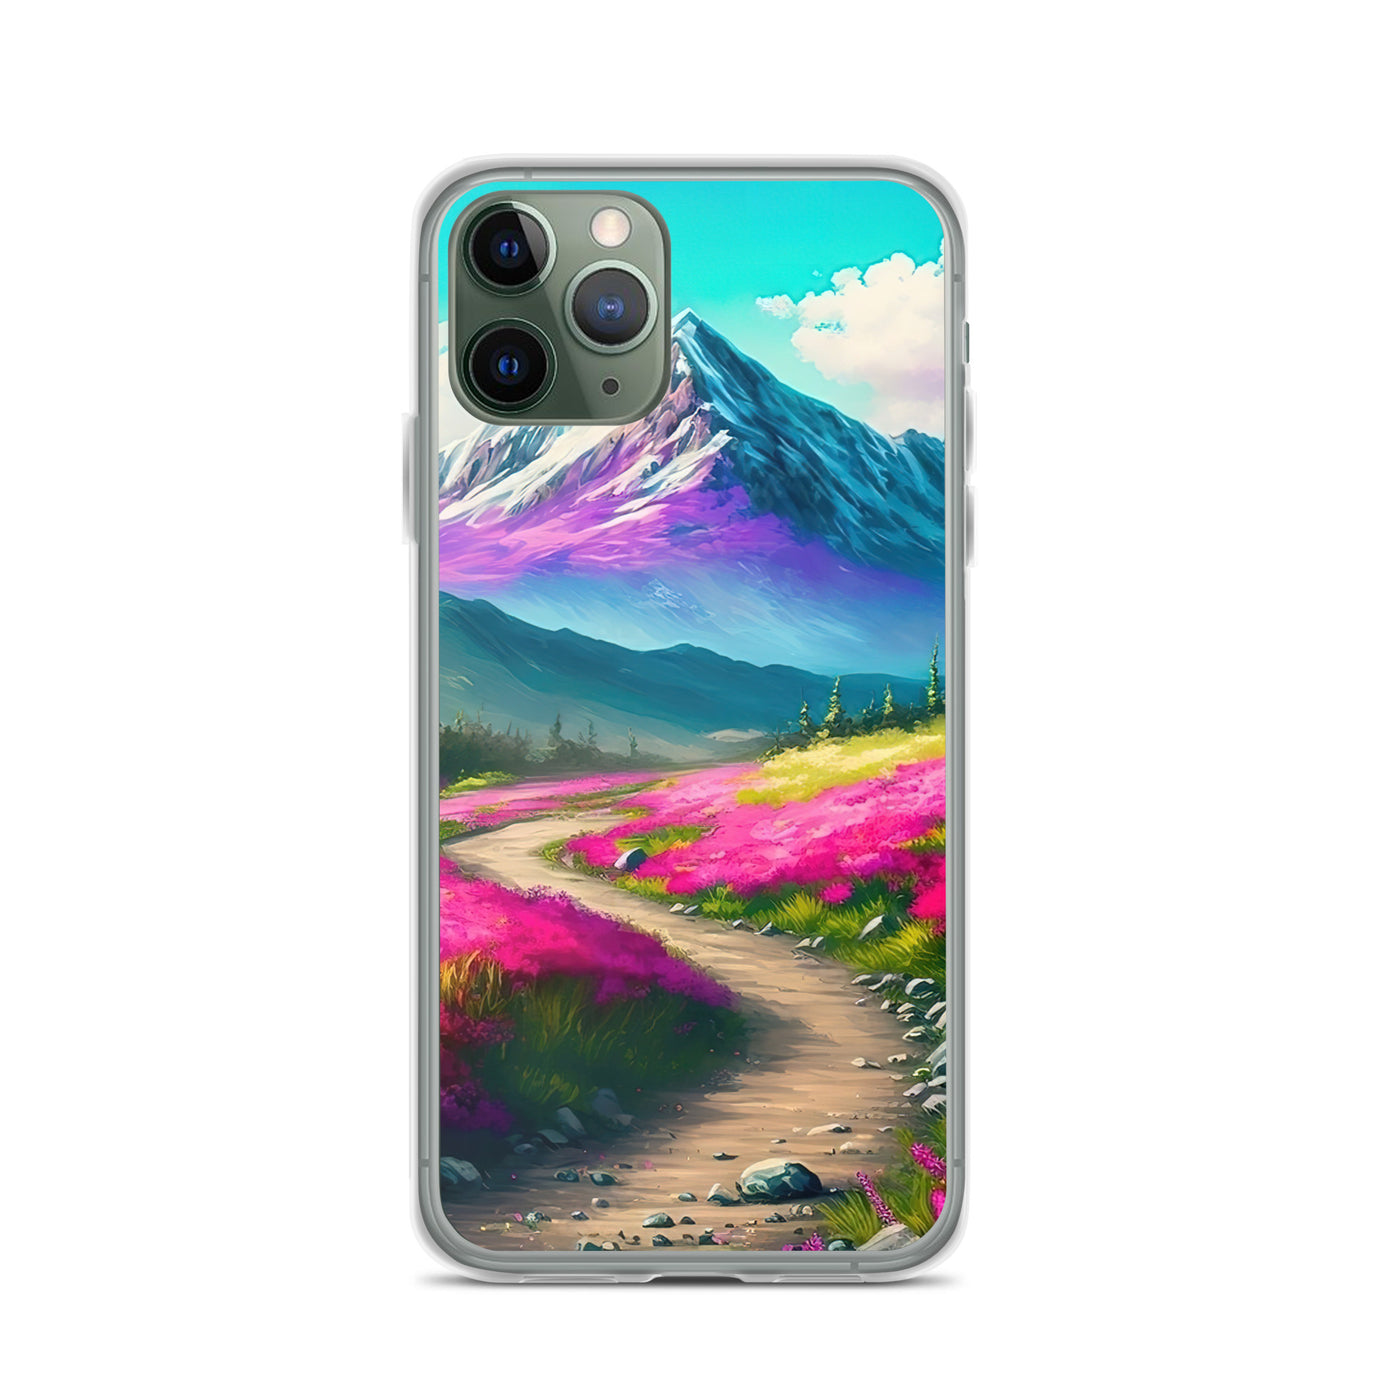 Berg, pinke Blumen und Wanderweg - Landschaftsmalerei - iPhone Schutzhülle (durchsichtig) berge xxx iPhone 11 Pro